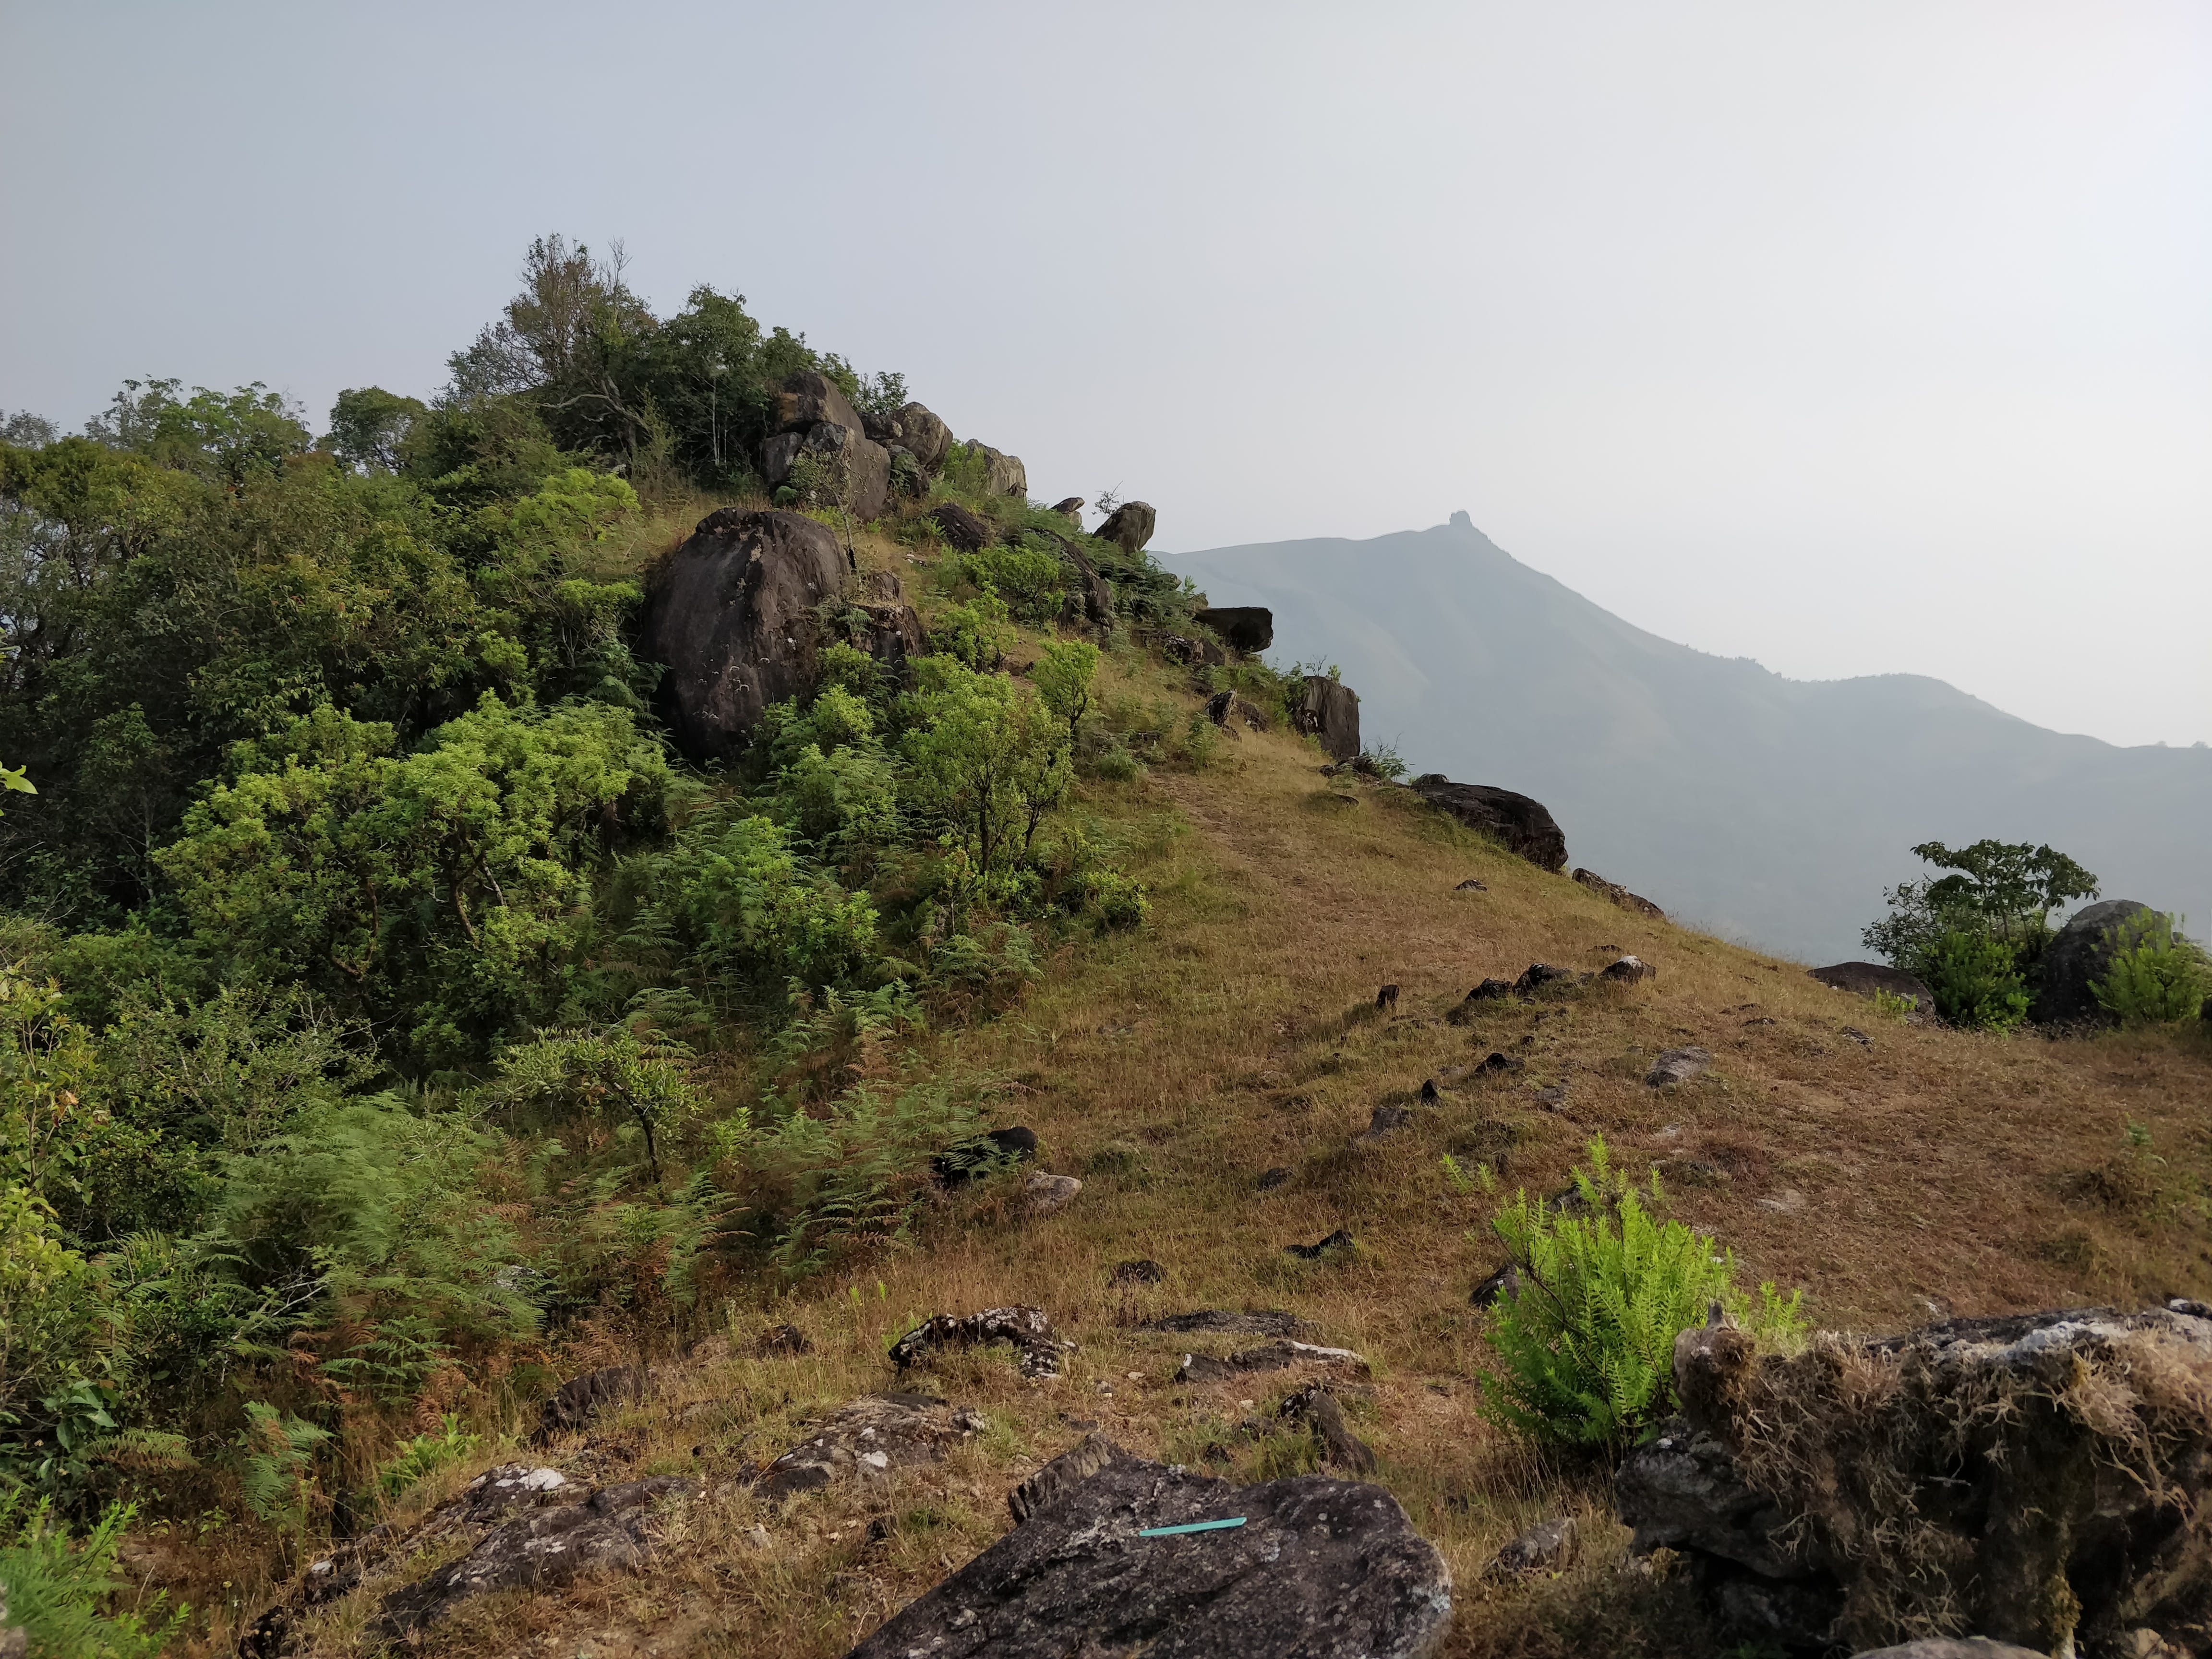 clicked at Pandava hills